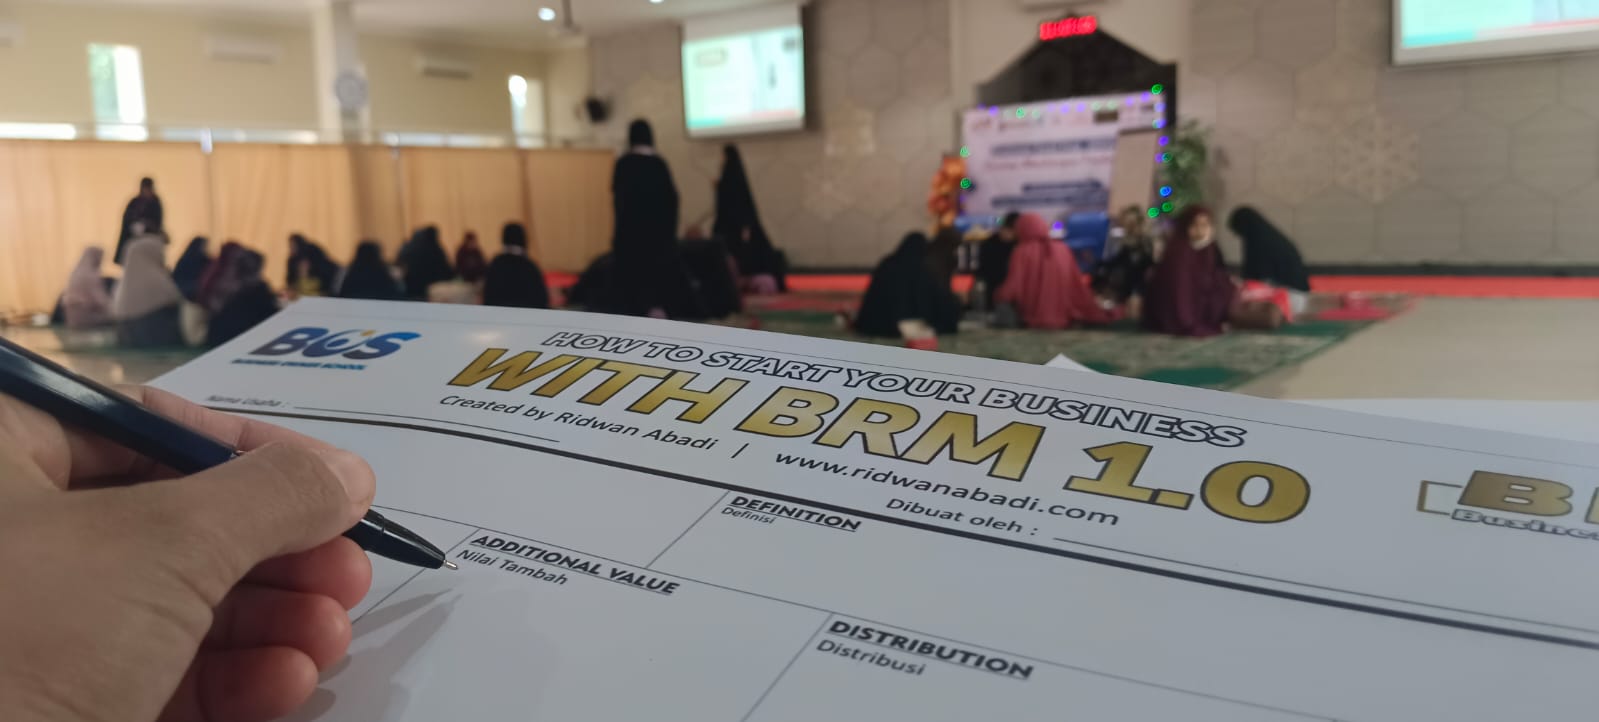 Pengusaha Muslimah Susun Strategi Bisnis dengan BRM 1.0